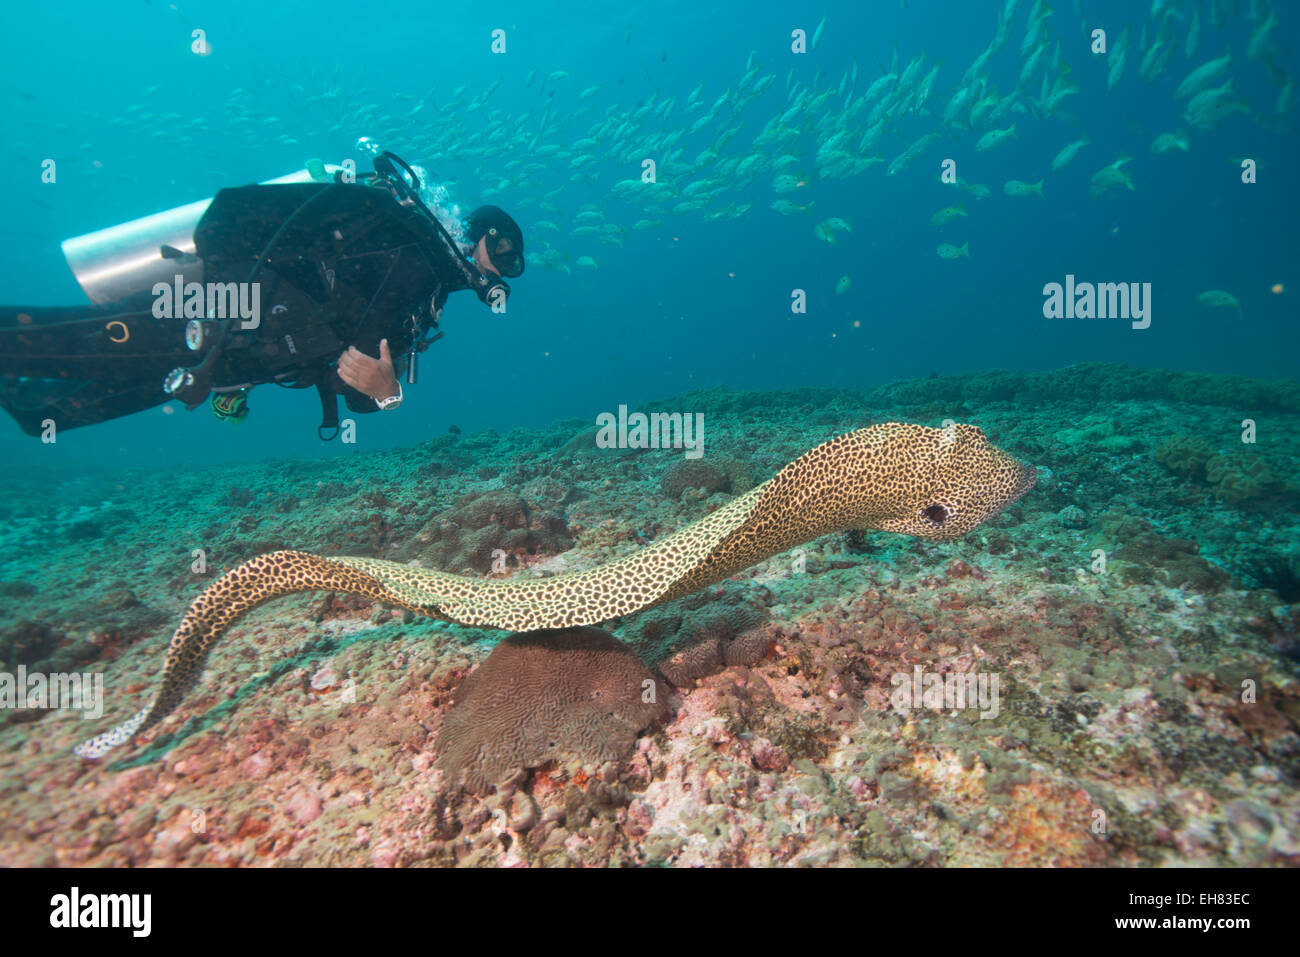 L'anguille tachetée libre, îles Dimaniyat, golfe d'Oman, Oman, Middle East Banque D'Images